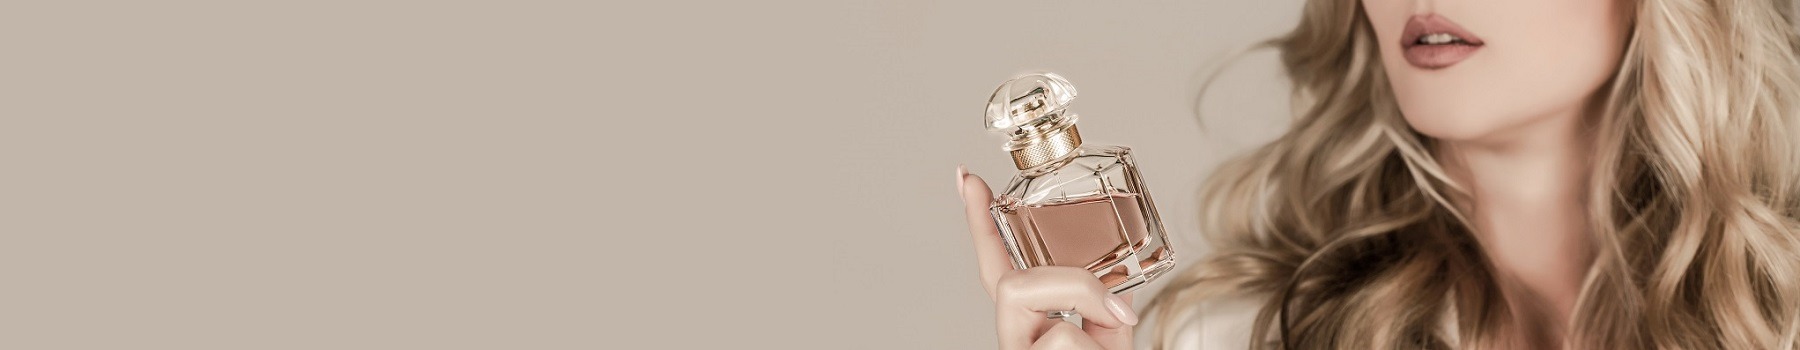 womanwithbottleofperfume-womanpresentsperfumesfragrance-perfume